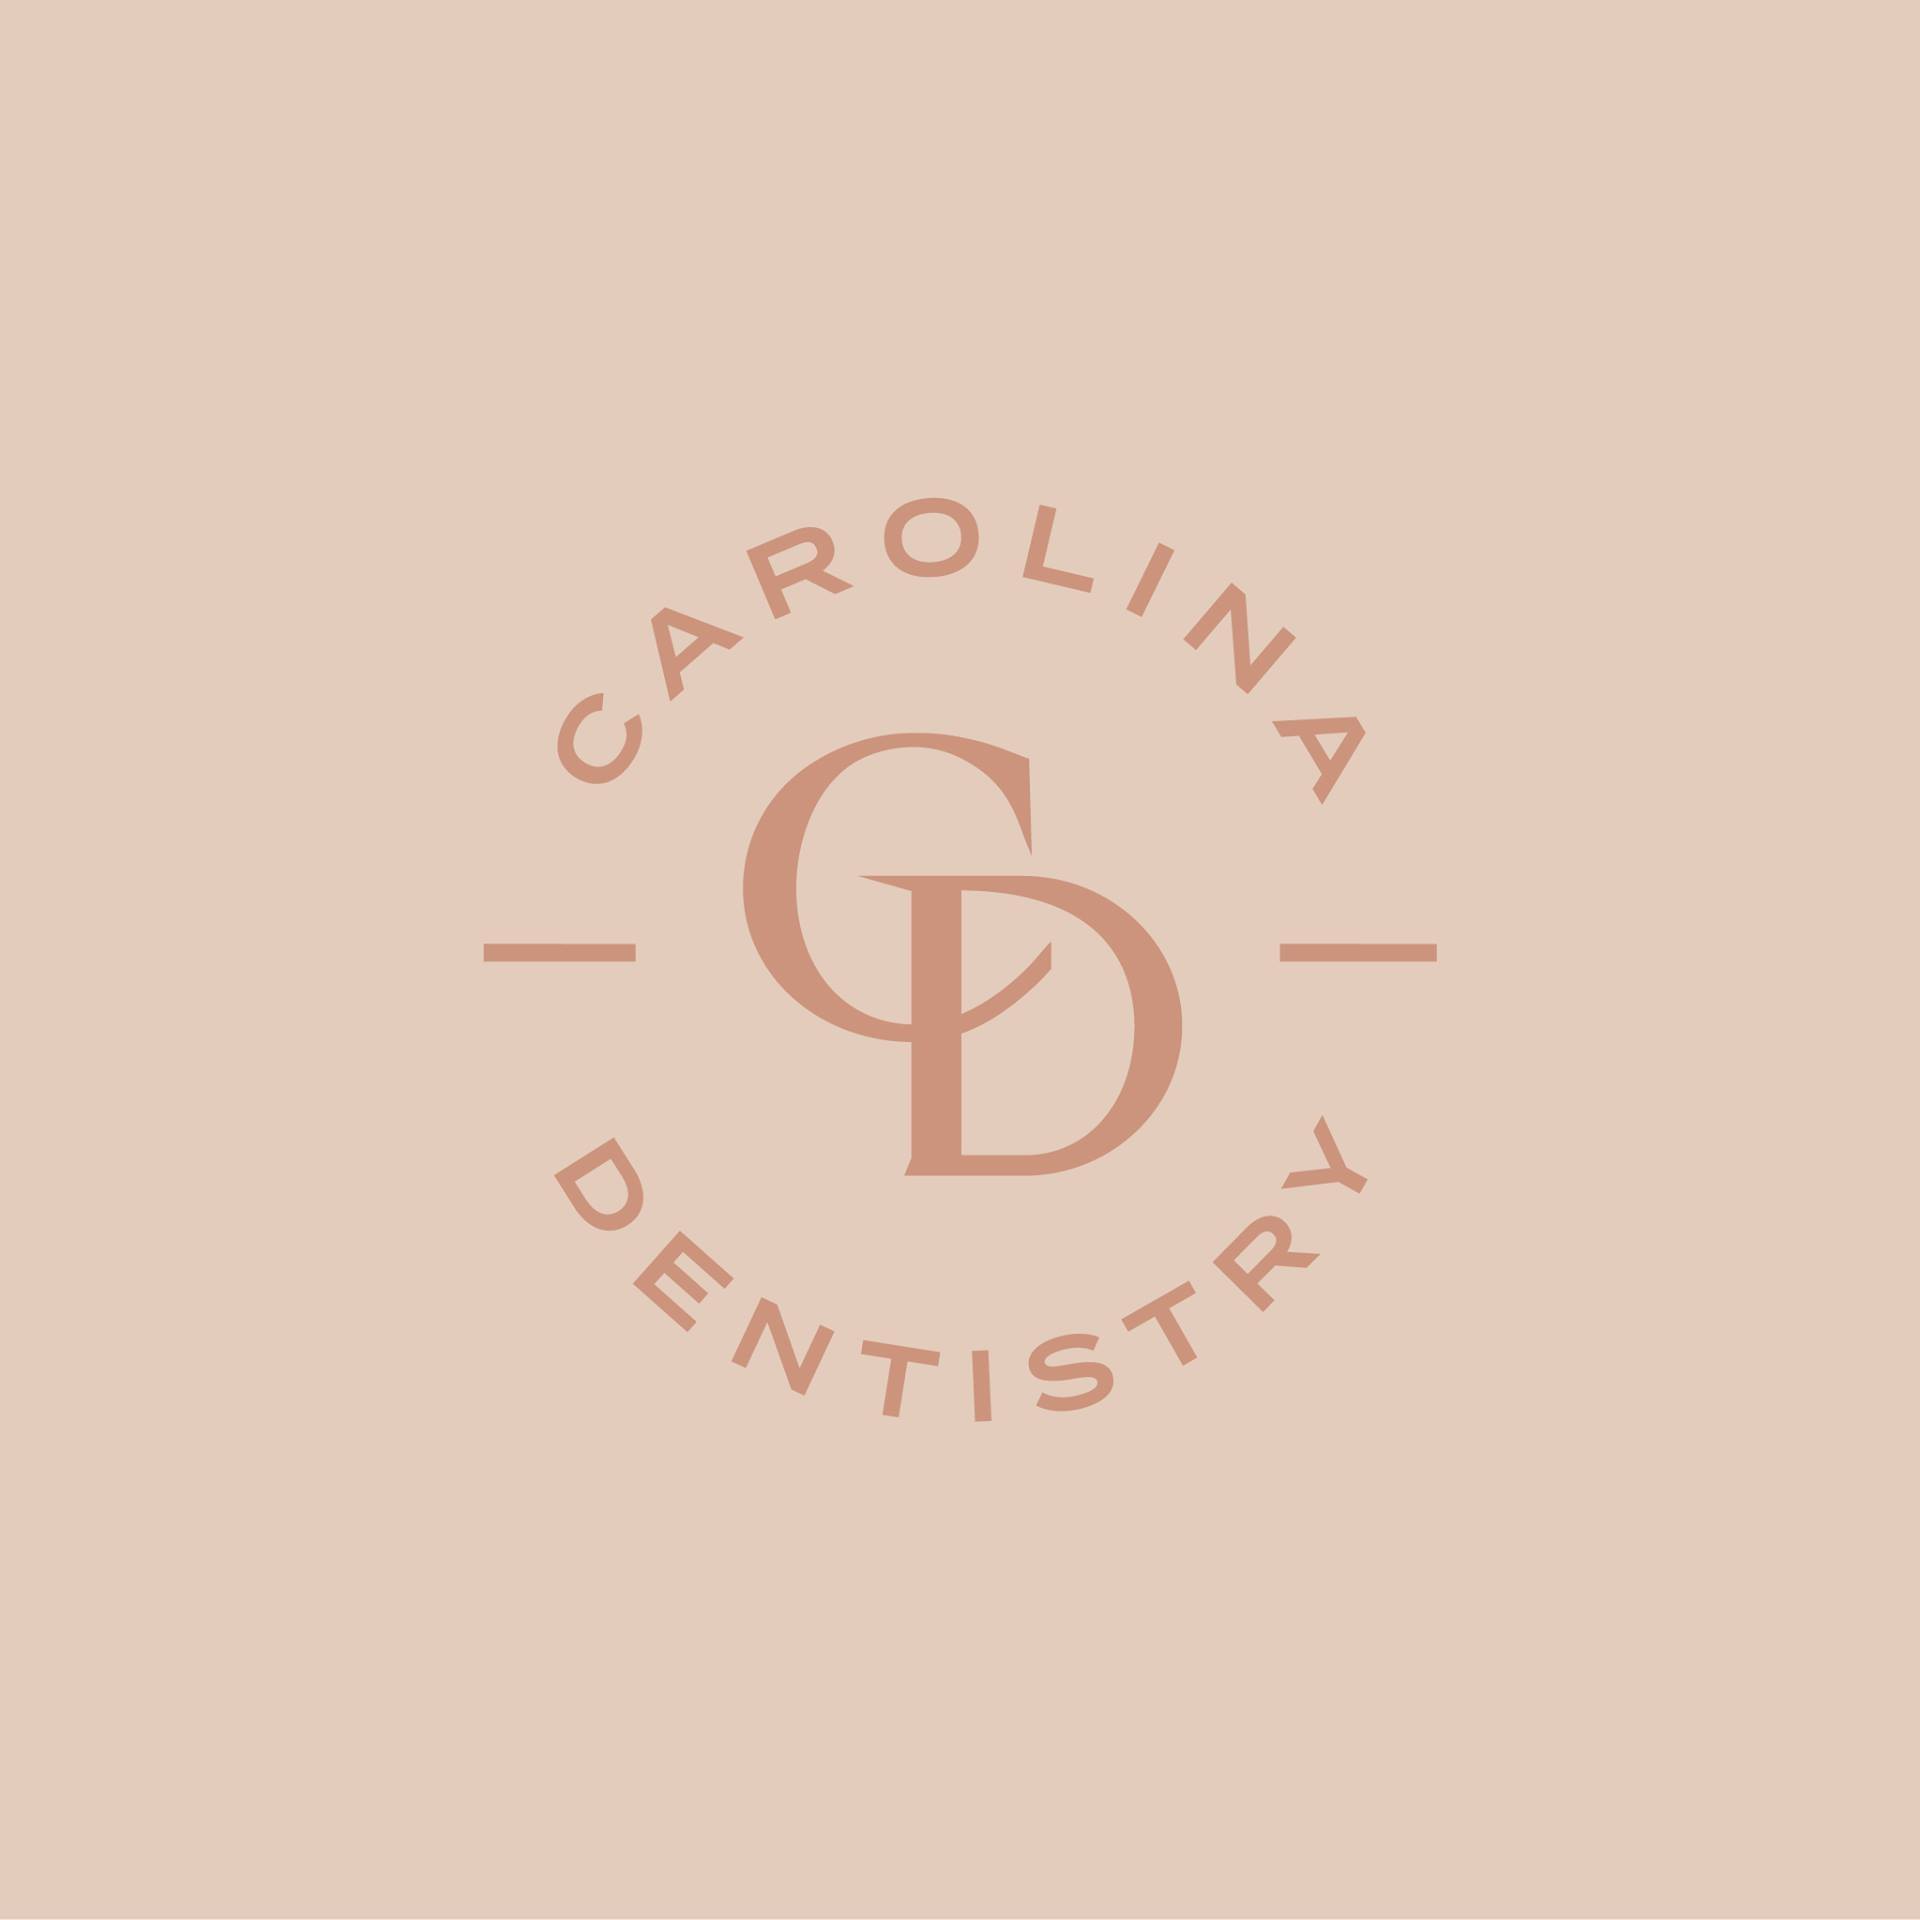 Company logo of Carolina Dentistry